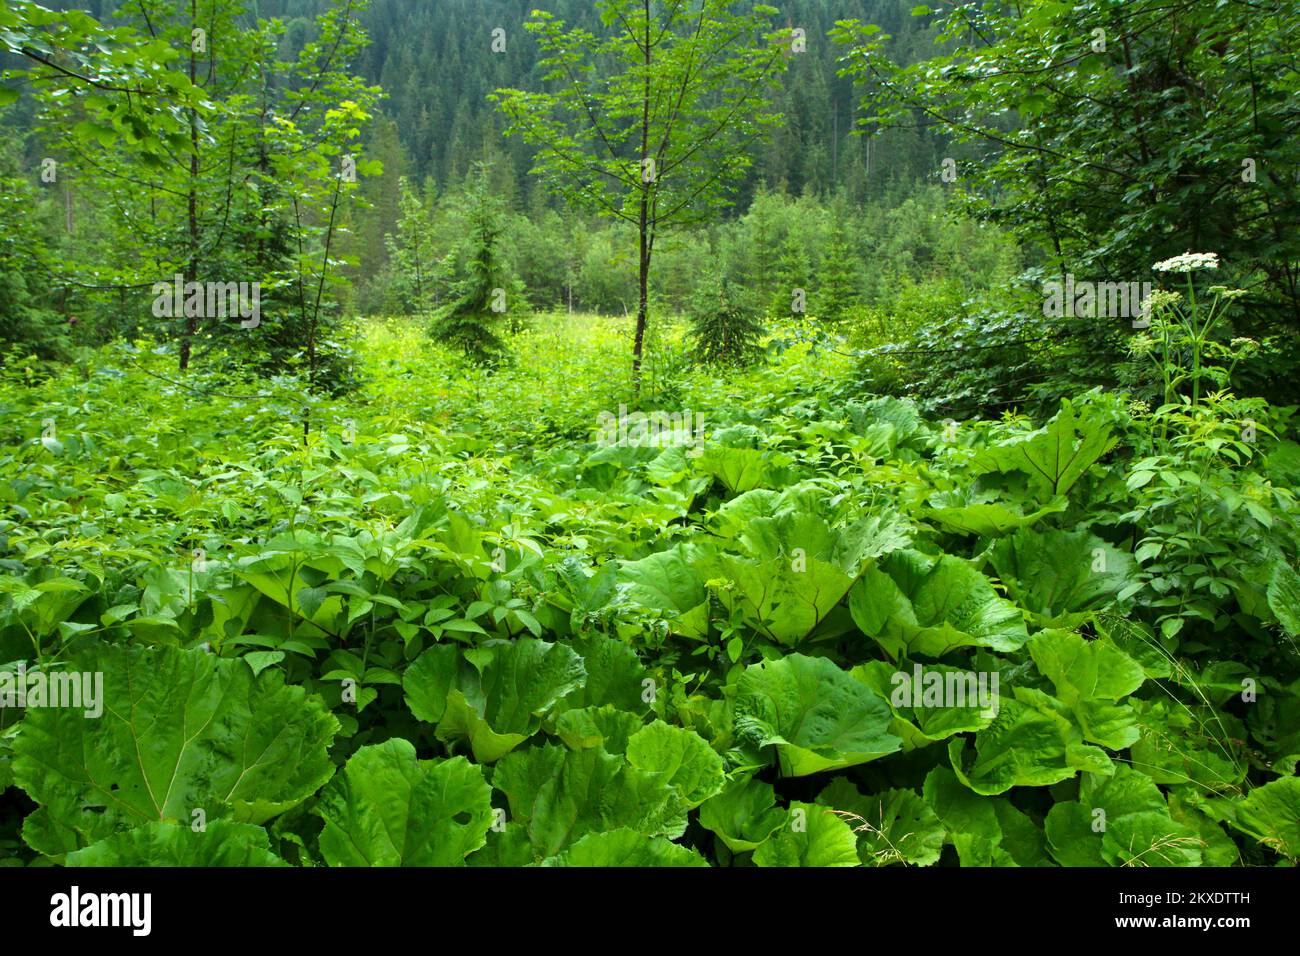 Un particolare della vegetazione alpina con un sacco di burdocks. Tutto è fresco verde e bagnato dopo la pioggia. Foto Stock